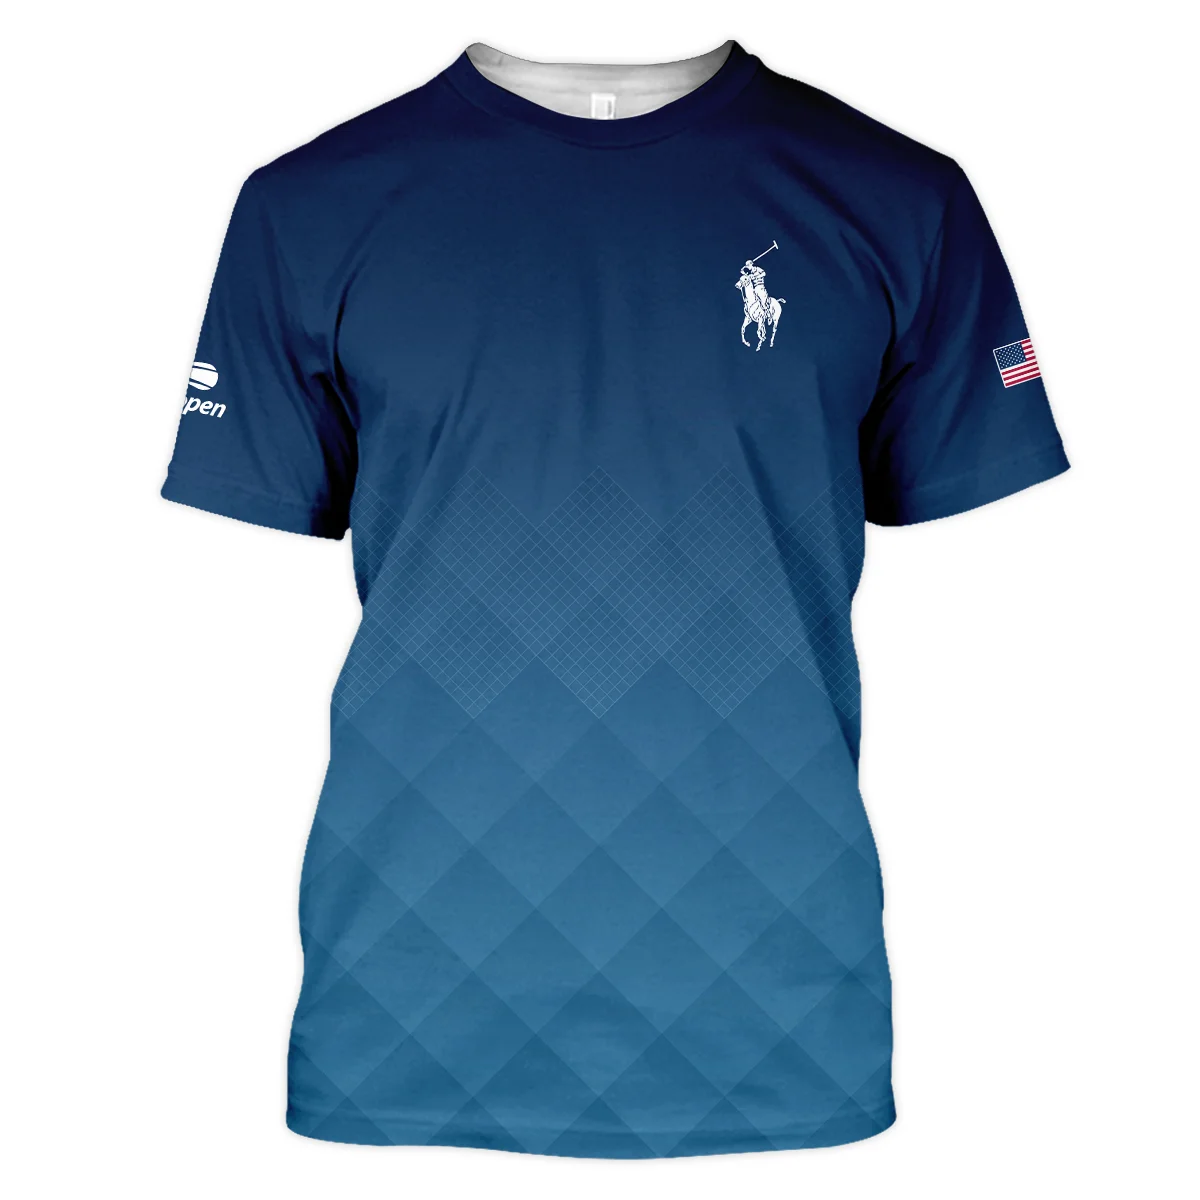 Ralph Lauren Blue Abstract Background US Open Tennis Champions Polo Shirt Mandarin Collar Polo Shirt